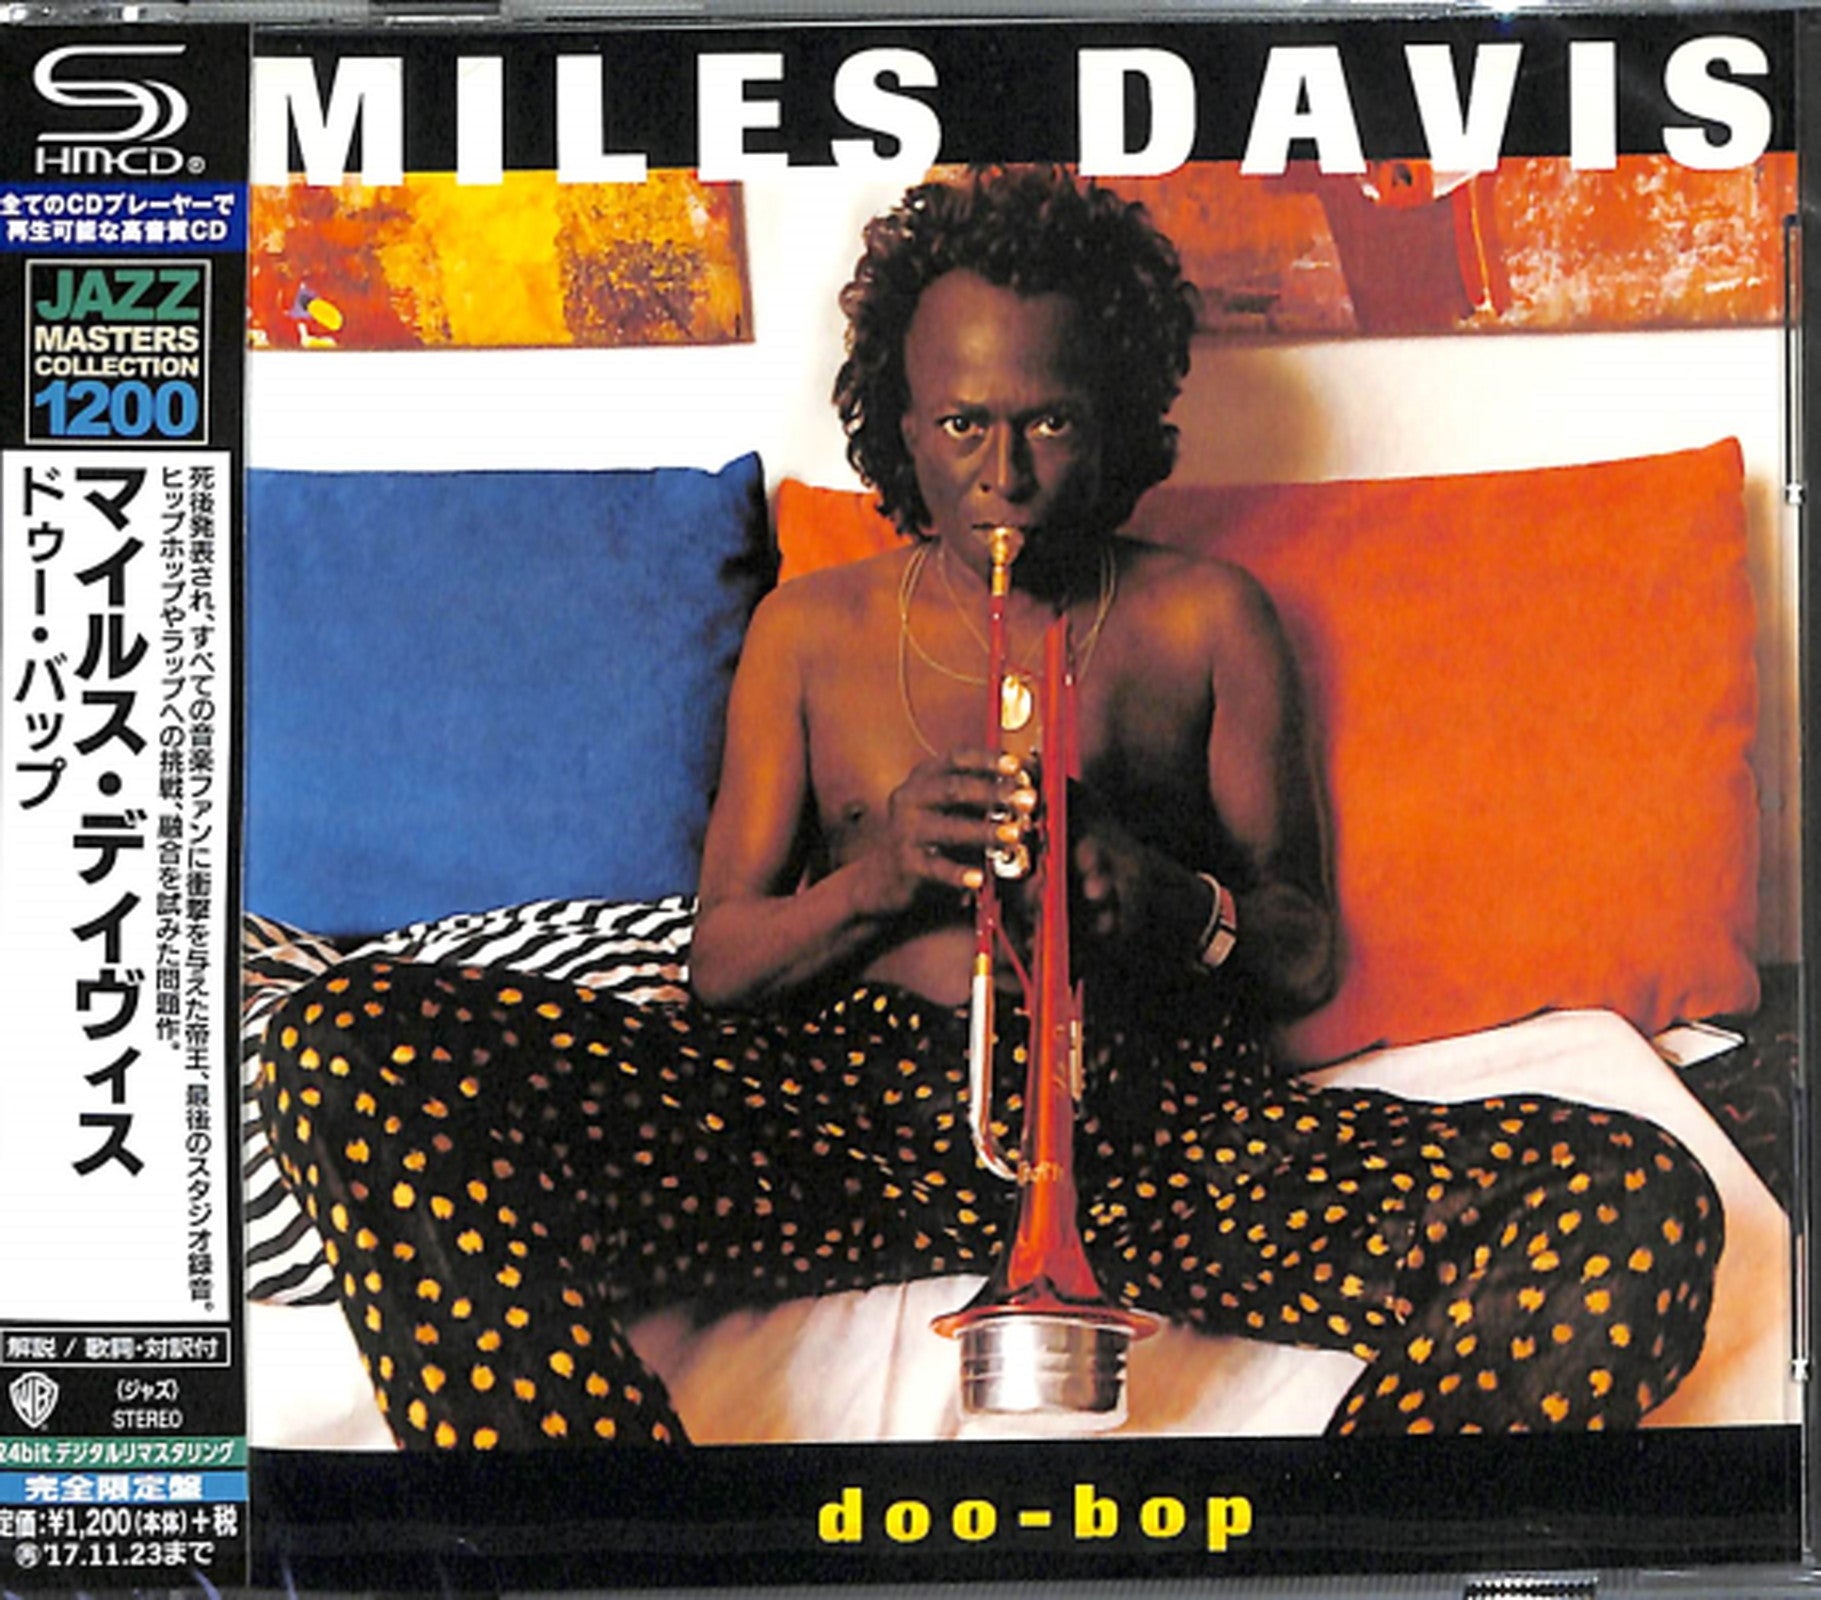 Miles Davis - Doo-Bop - Japan SHM-CD – CDs Vinyl Japan Store